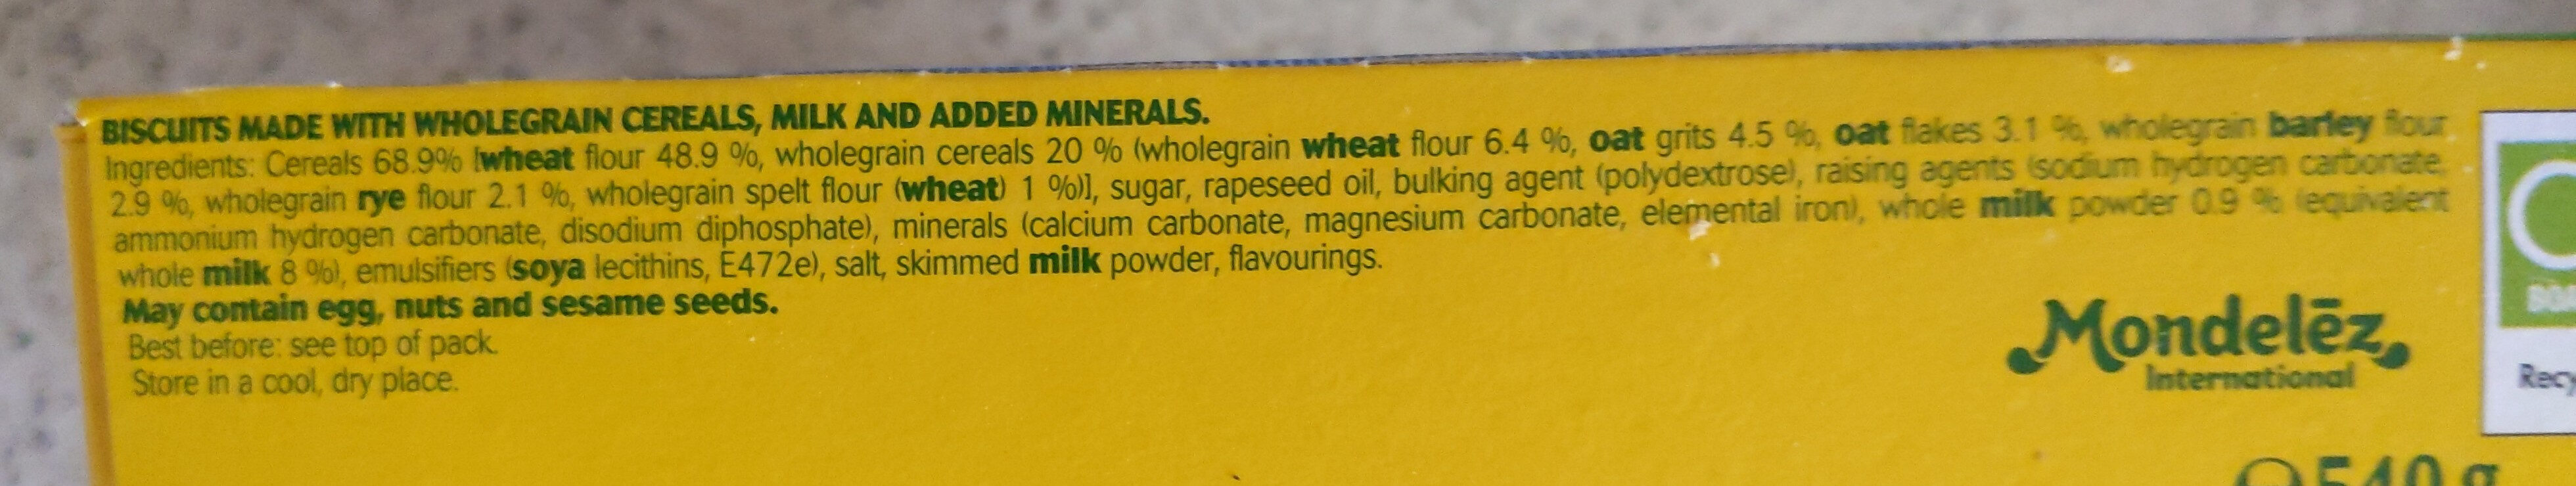 Breakfast Biscuits Milk & Cereals Packs - Ingredients